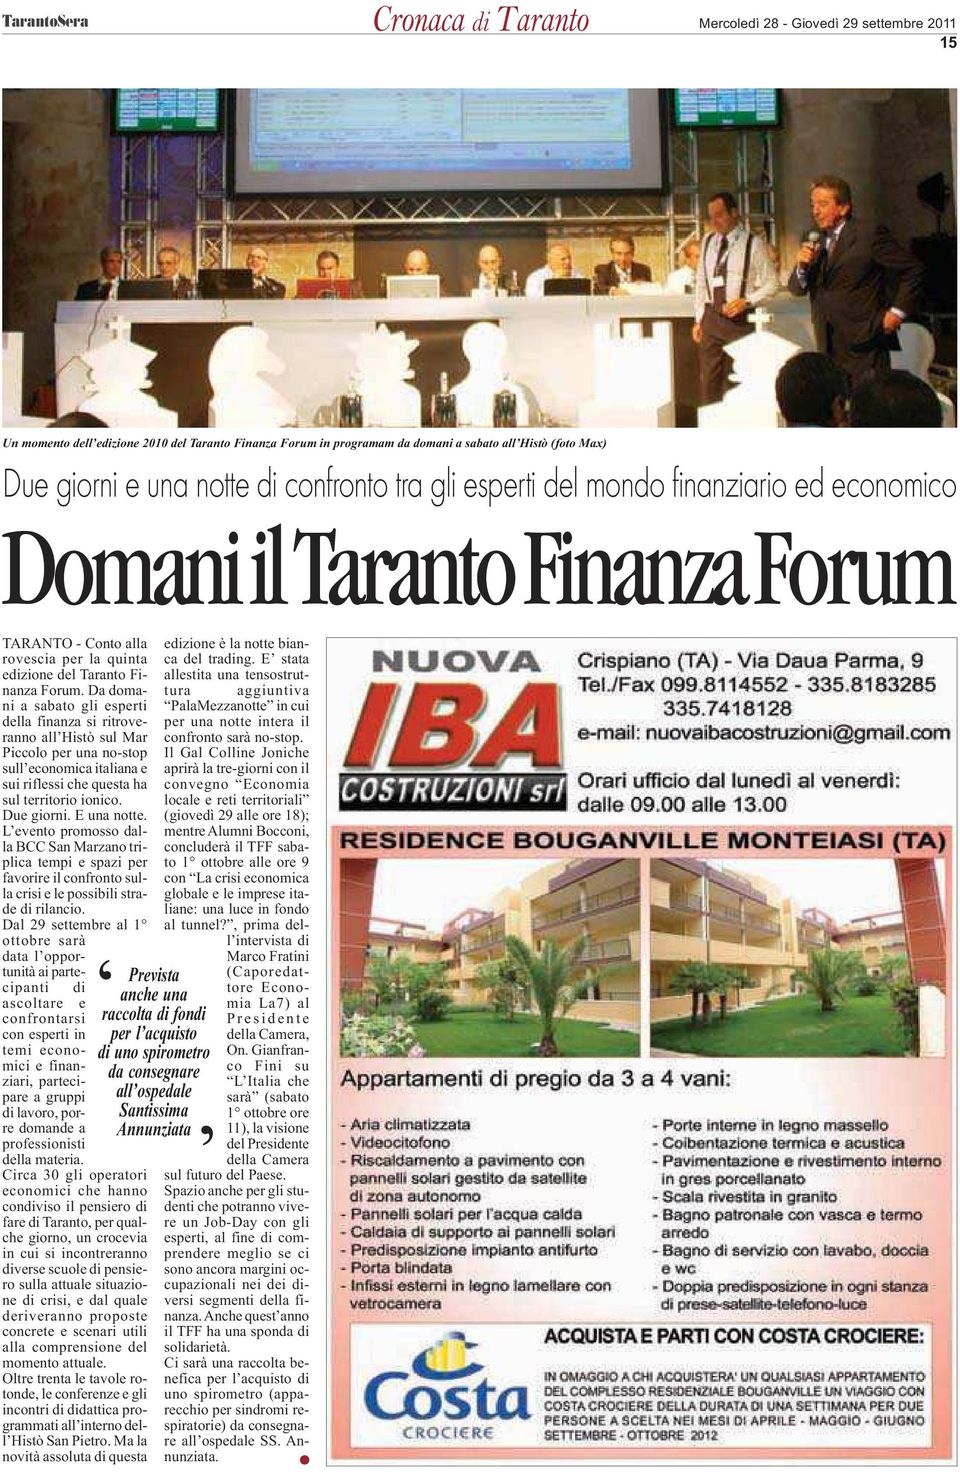 ospedale Santissima Annunziata TARANTO - Conto alla rovescia per la quinta edizione del Taranto Finanza Forum.